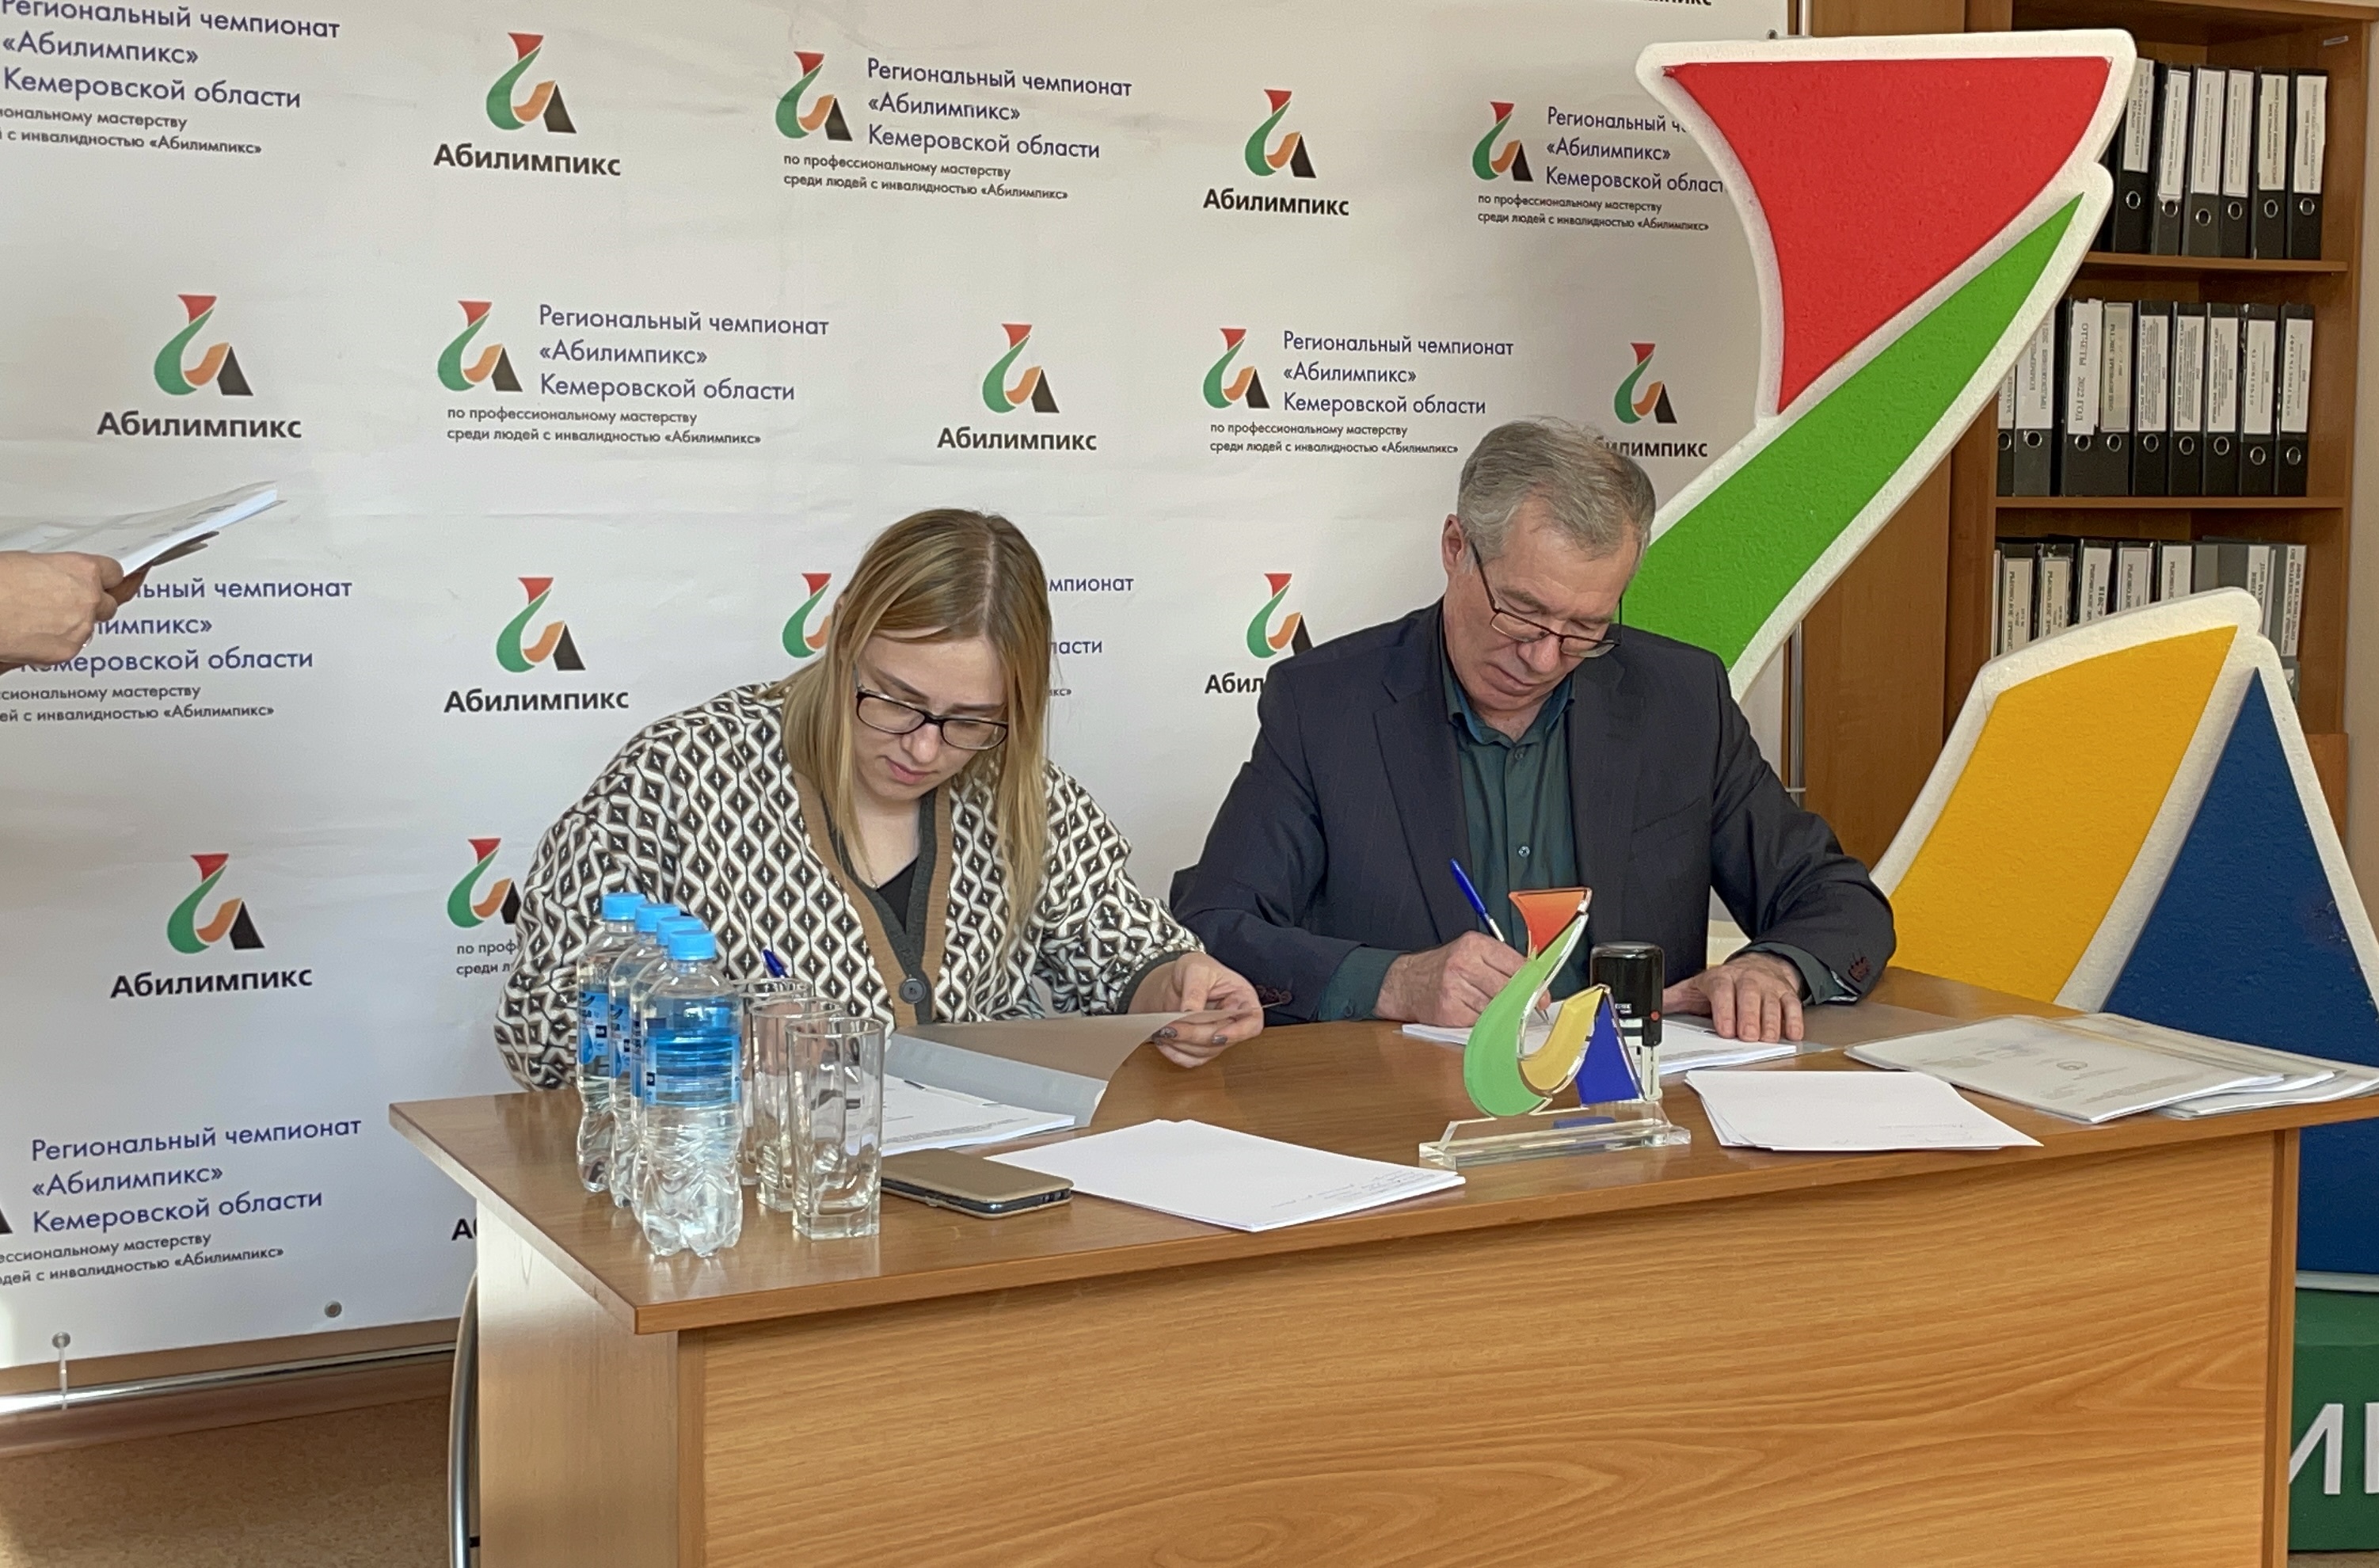 Подписание конкурсных заданий на VII Региональный чемпионат «Абилимпикс»-2022 состоялось в Кузбассе 